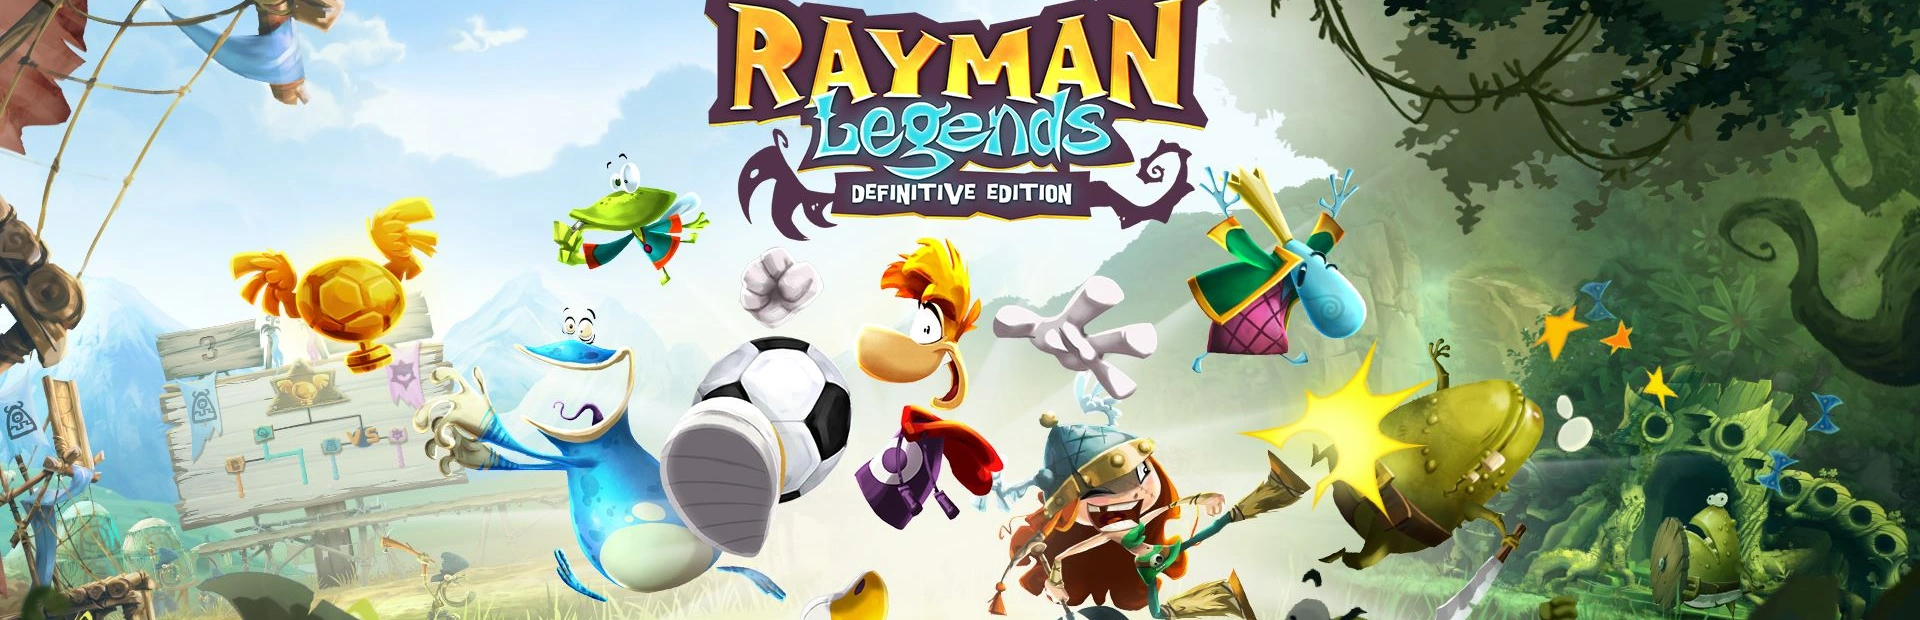 دانلود بازی Rayman Legends برای کامپیوتر | گیمباتو